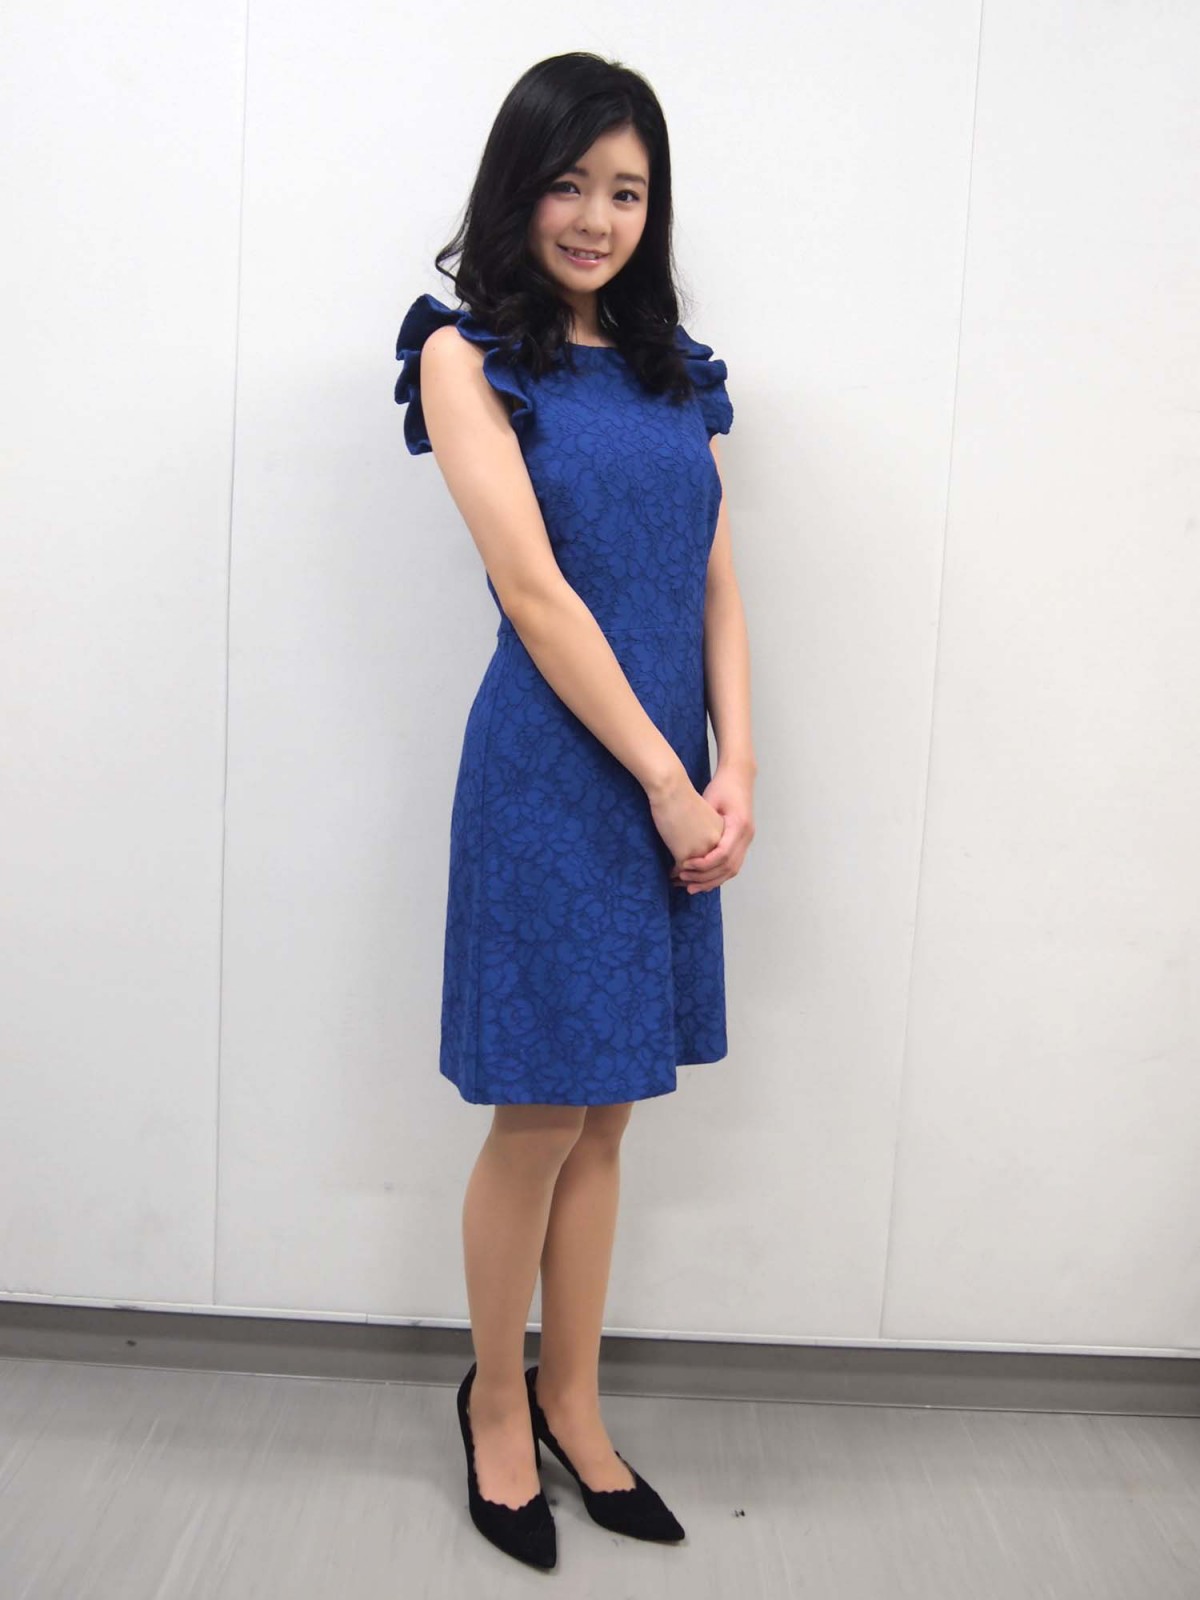 元・アンジュルム、田村芽実、舞台女優としての“今”を語る「自分には歌しかない」